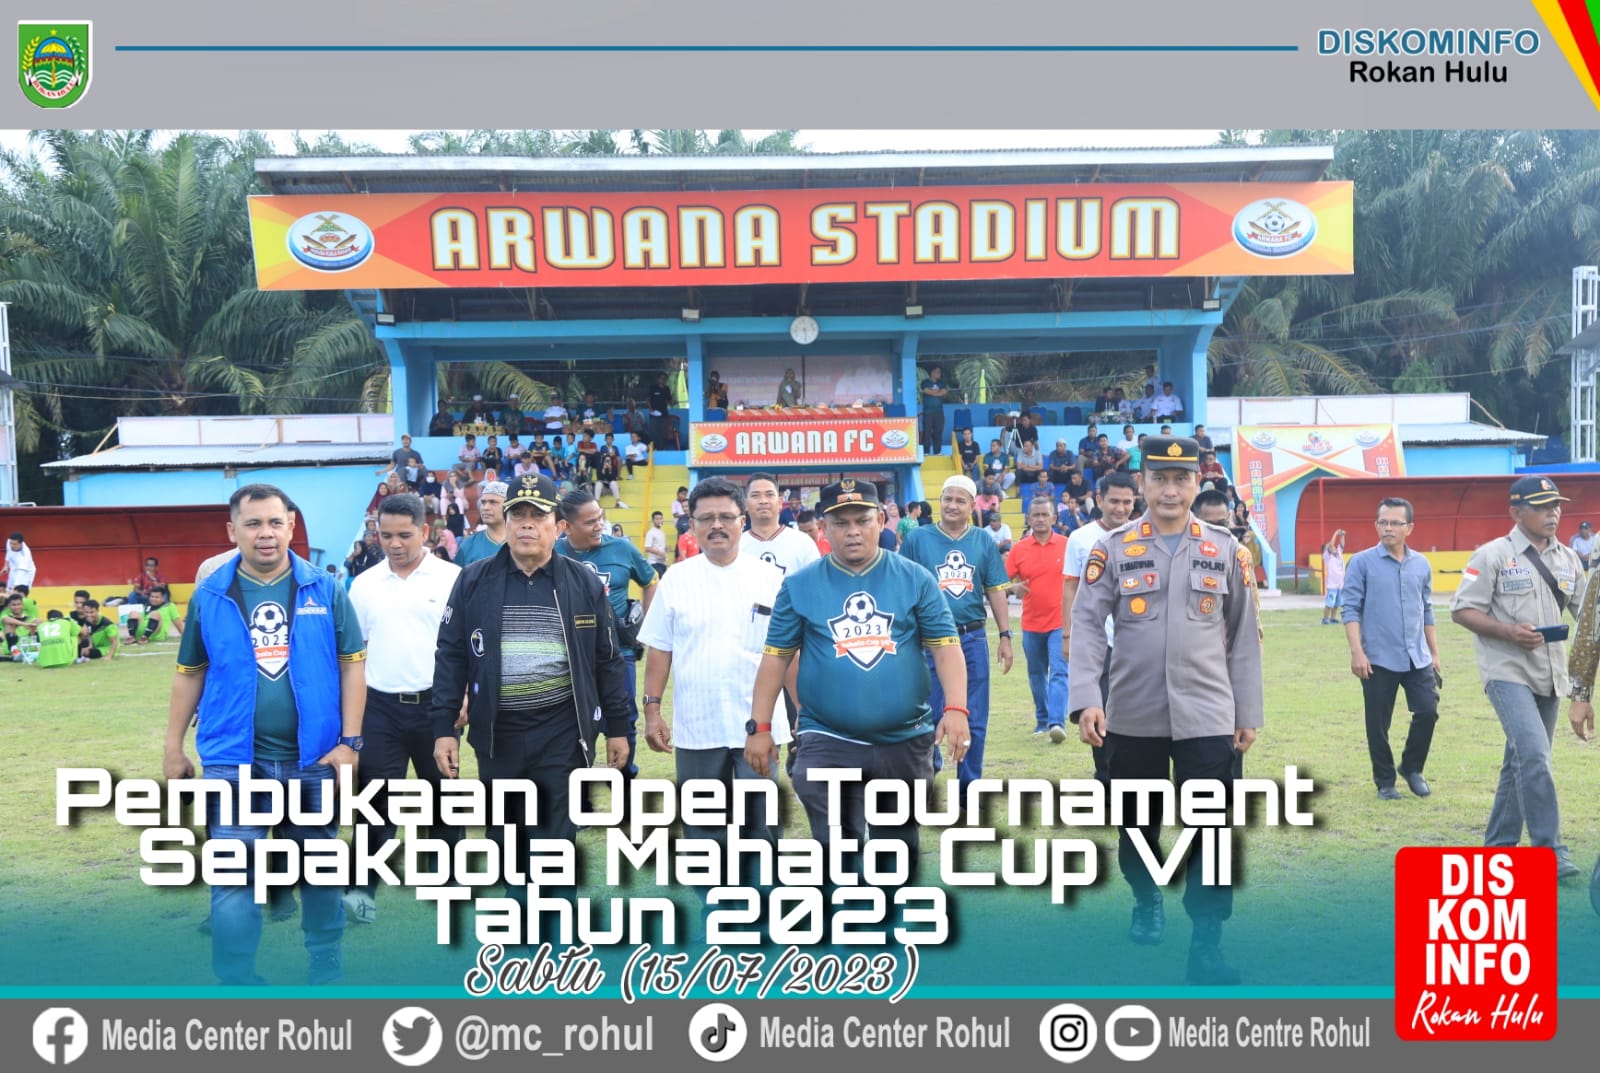 Buka Open Turnamen Sepak Bola Mahato CUP VIl, Bupati Sukiman : Junjung Tinggi Sportifitas